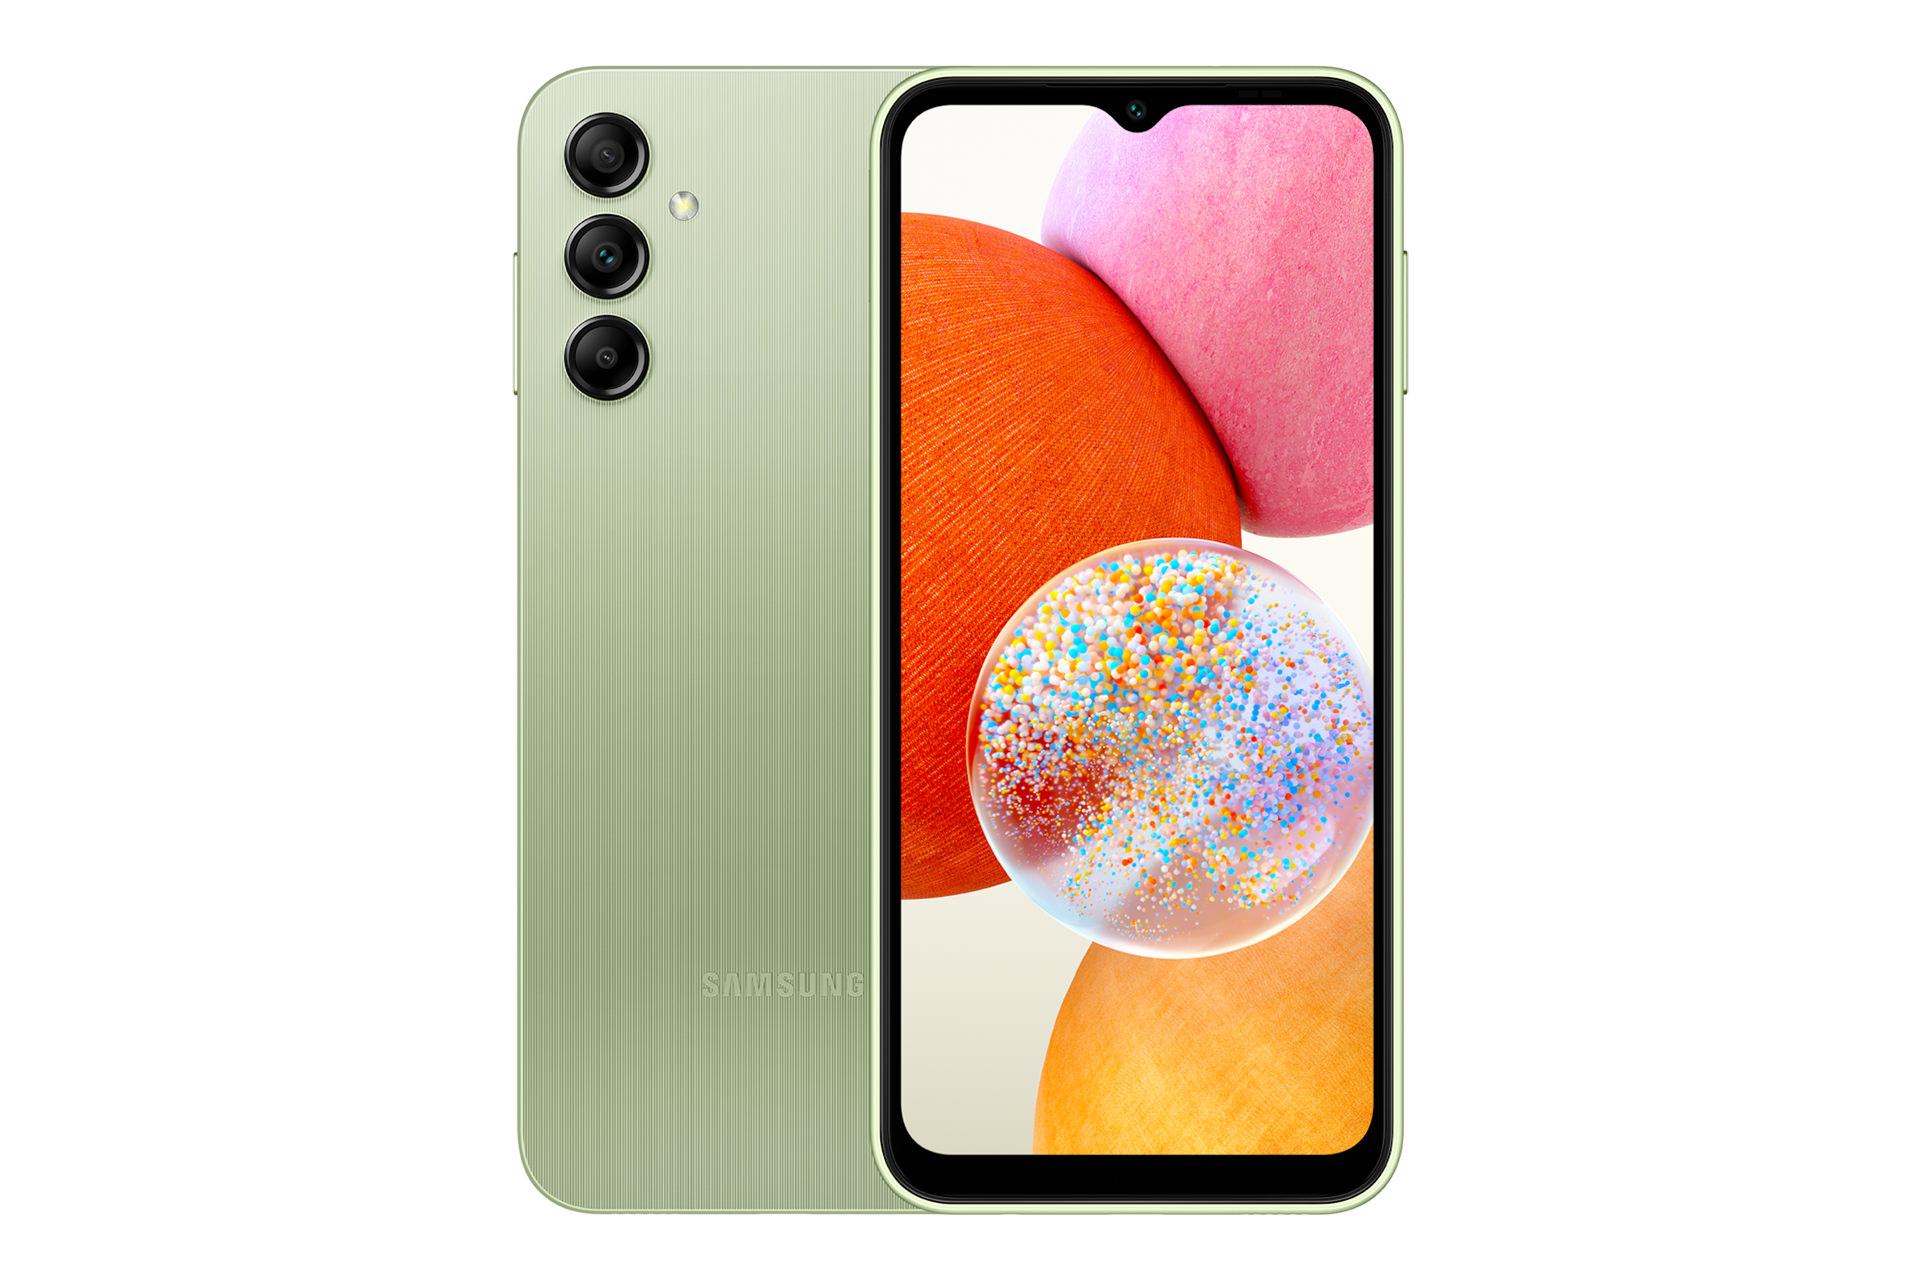 نمای کلی گوشی موبایل گلکسی A14 سامسونگ / Samsung Galaxy A14 با نمایشگر روشن و نمایش لوگو و دوربین پنل پشت رنگ سبز